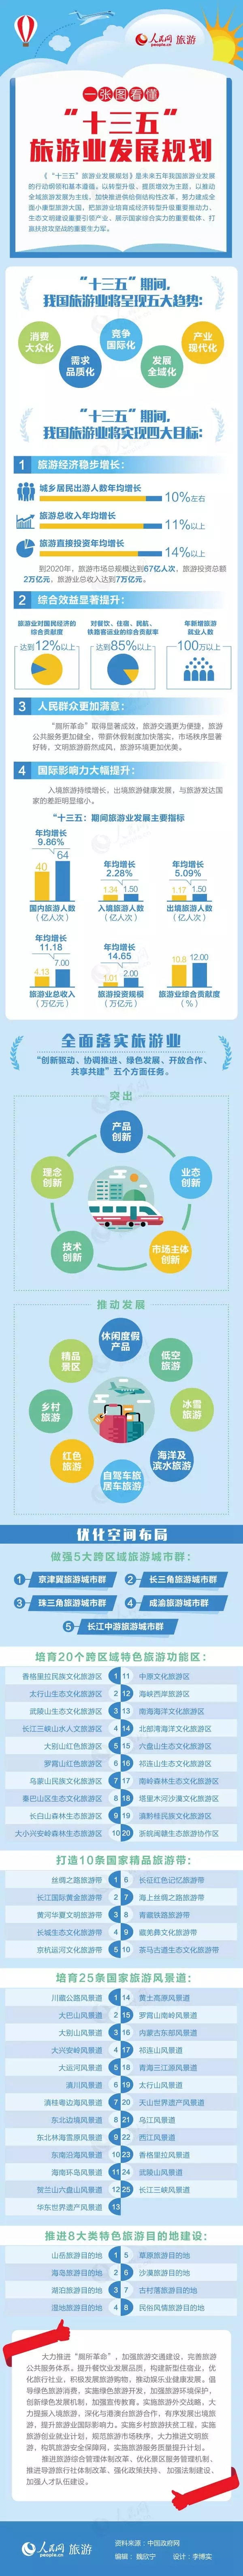 十三五中国旅游业发展规划